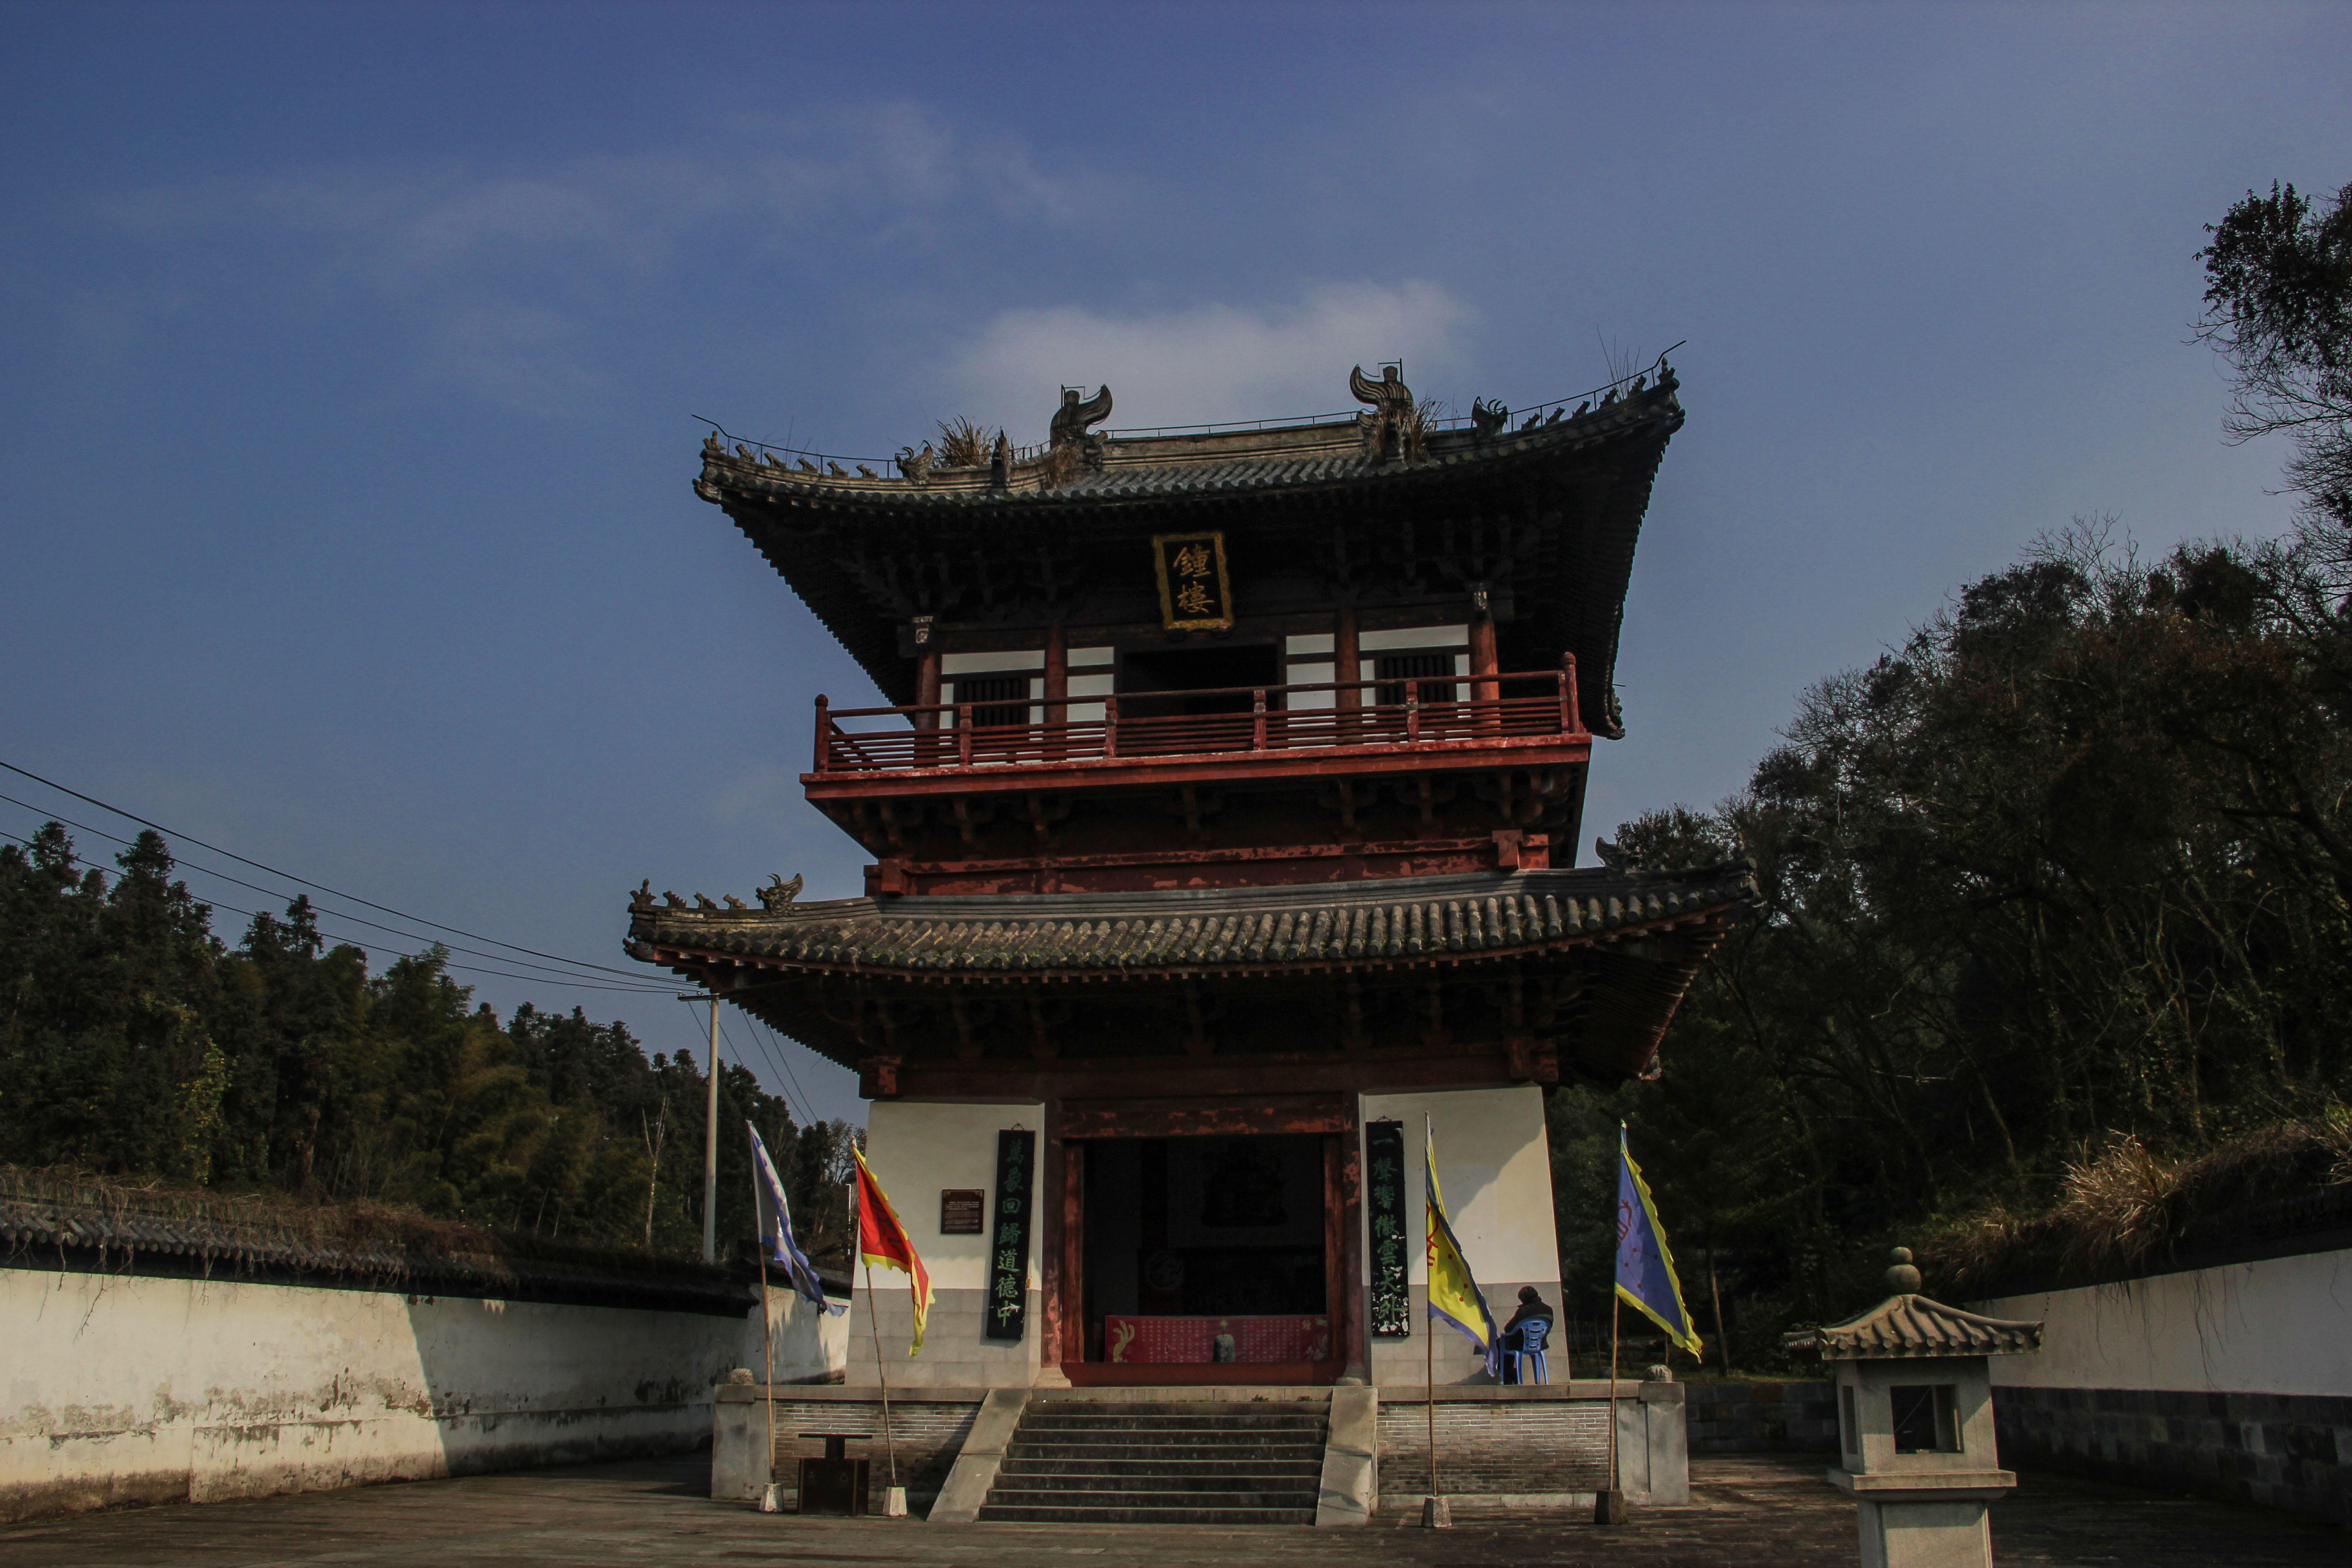 天津「独乐寺」是一个什么景点，有什么吸引人的地方和历史典故？ - 知乎